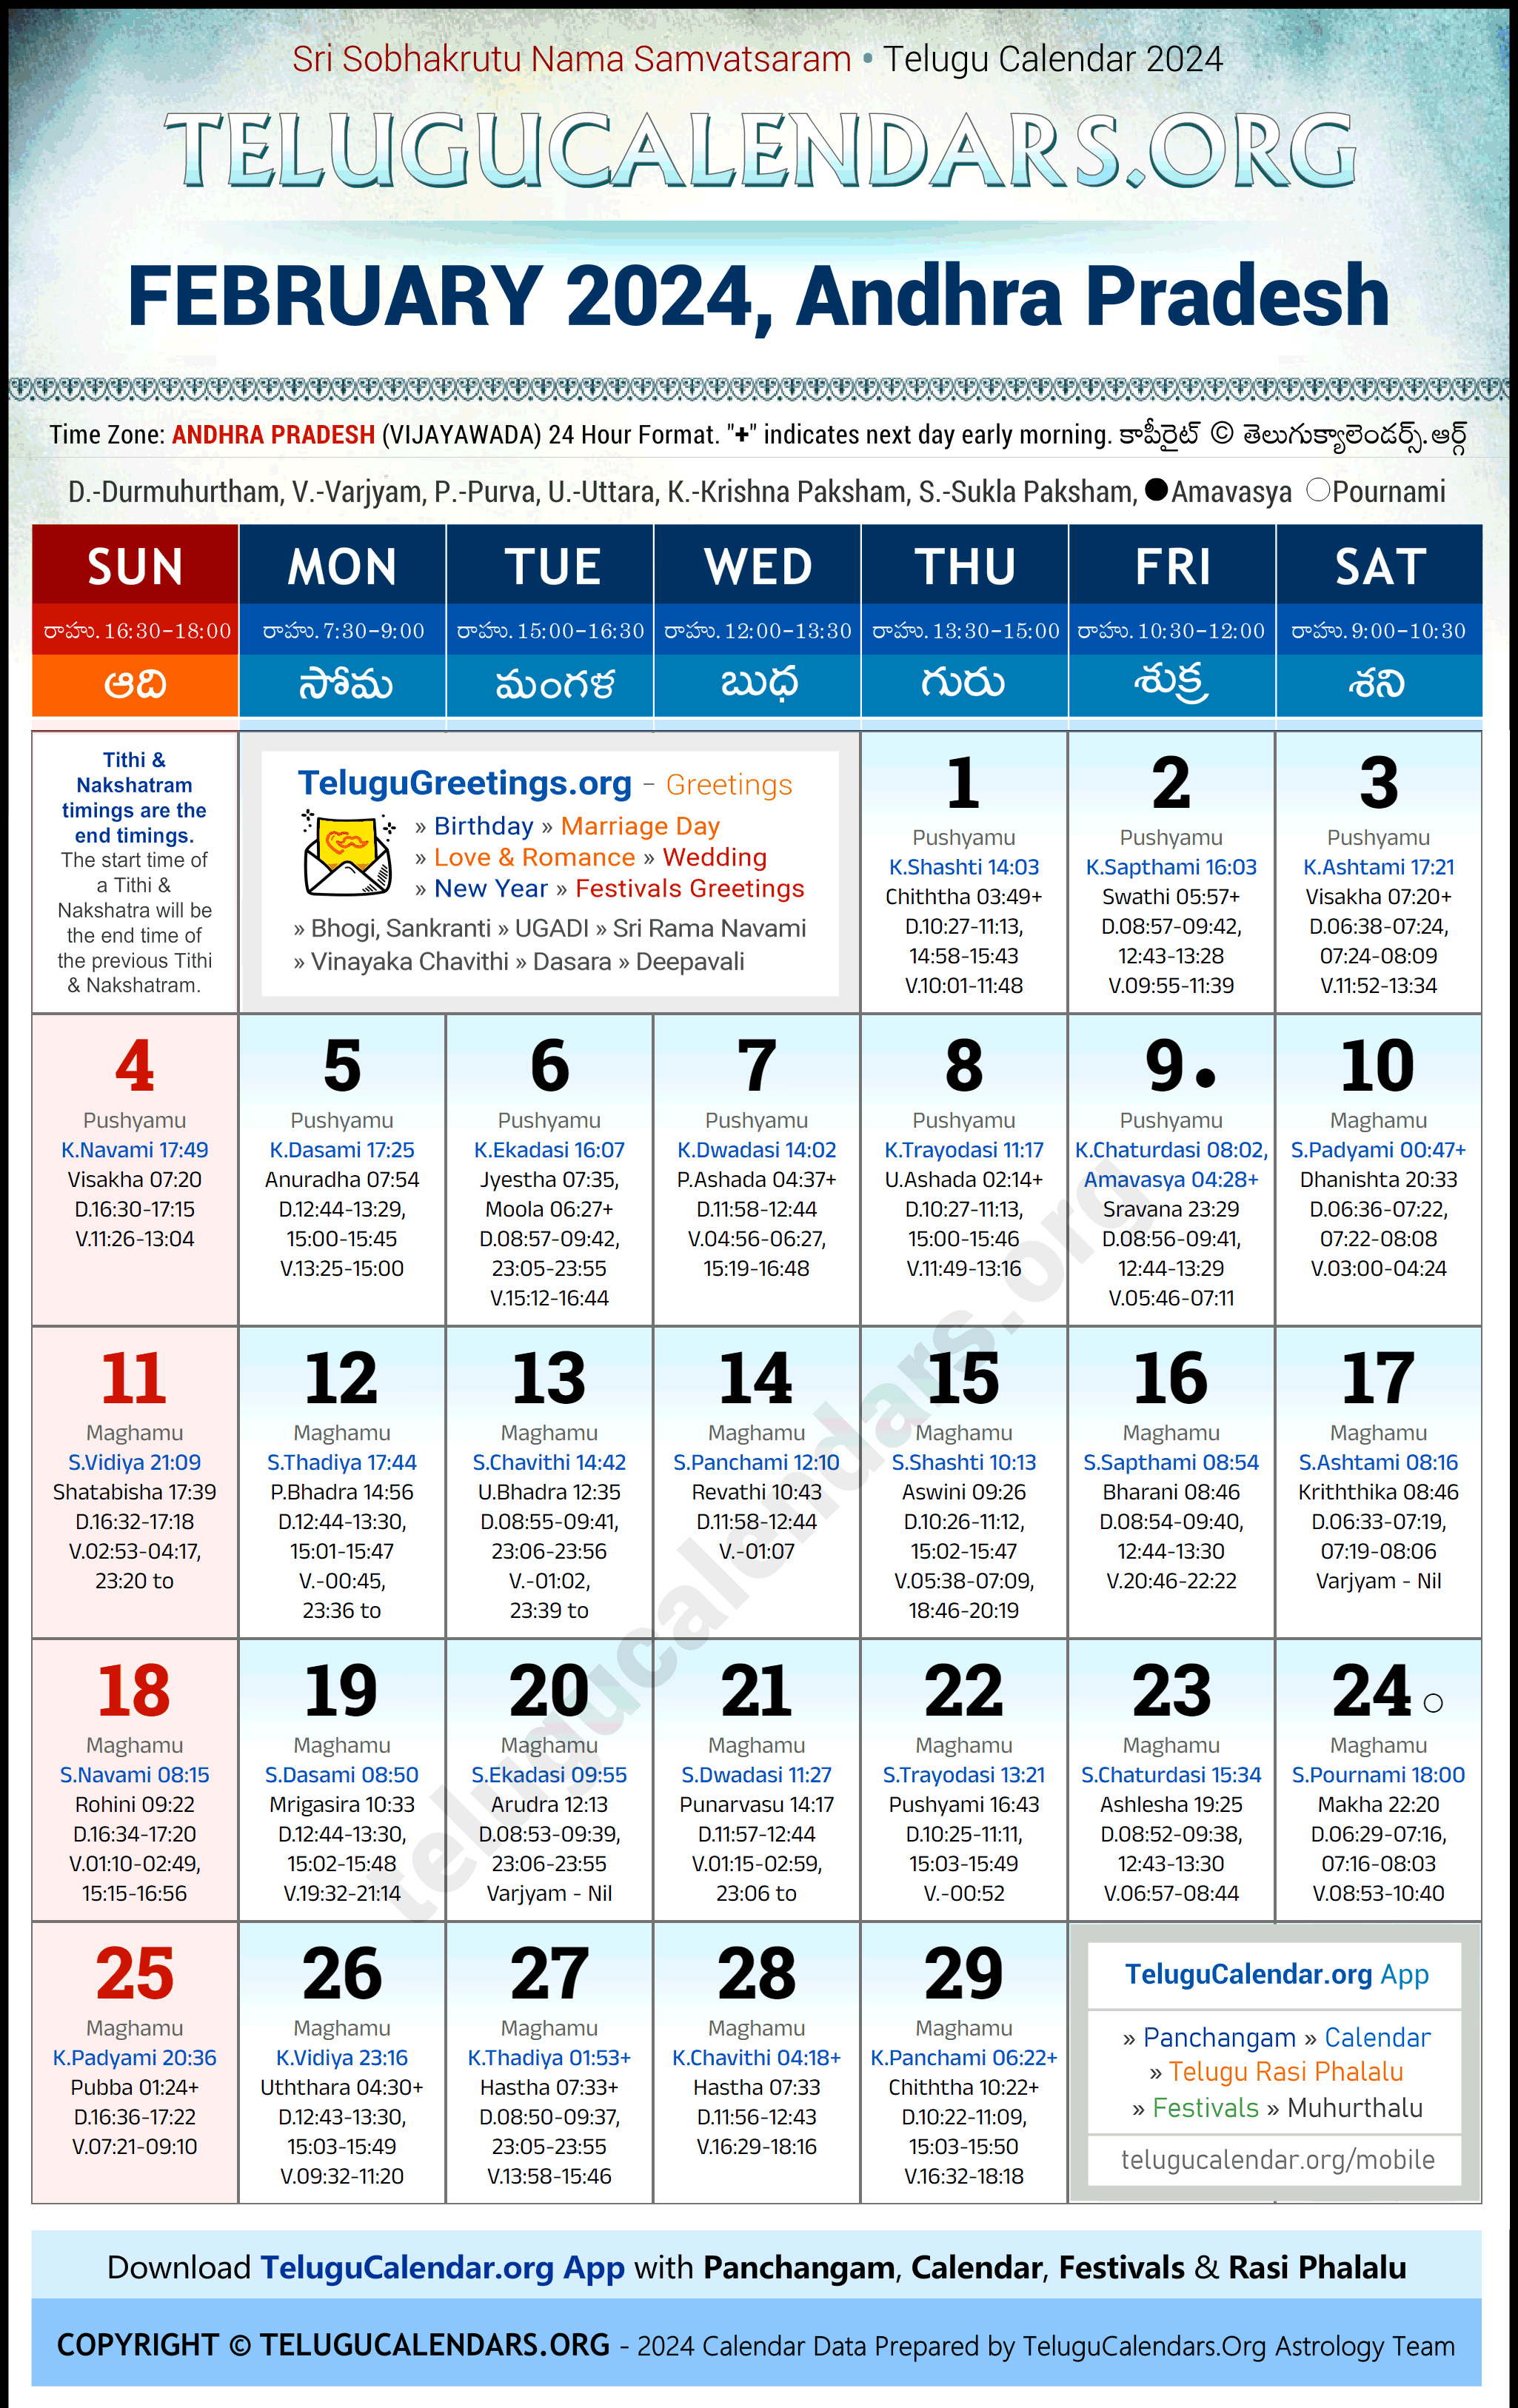 Telugu Calendar 2024 February Festivals for Andhra Pradesh